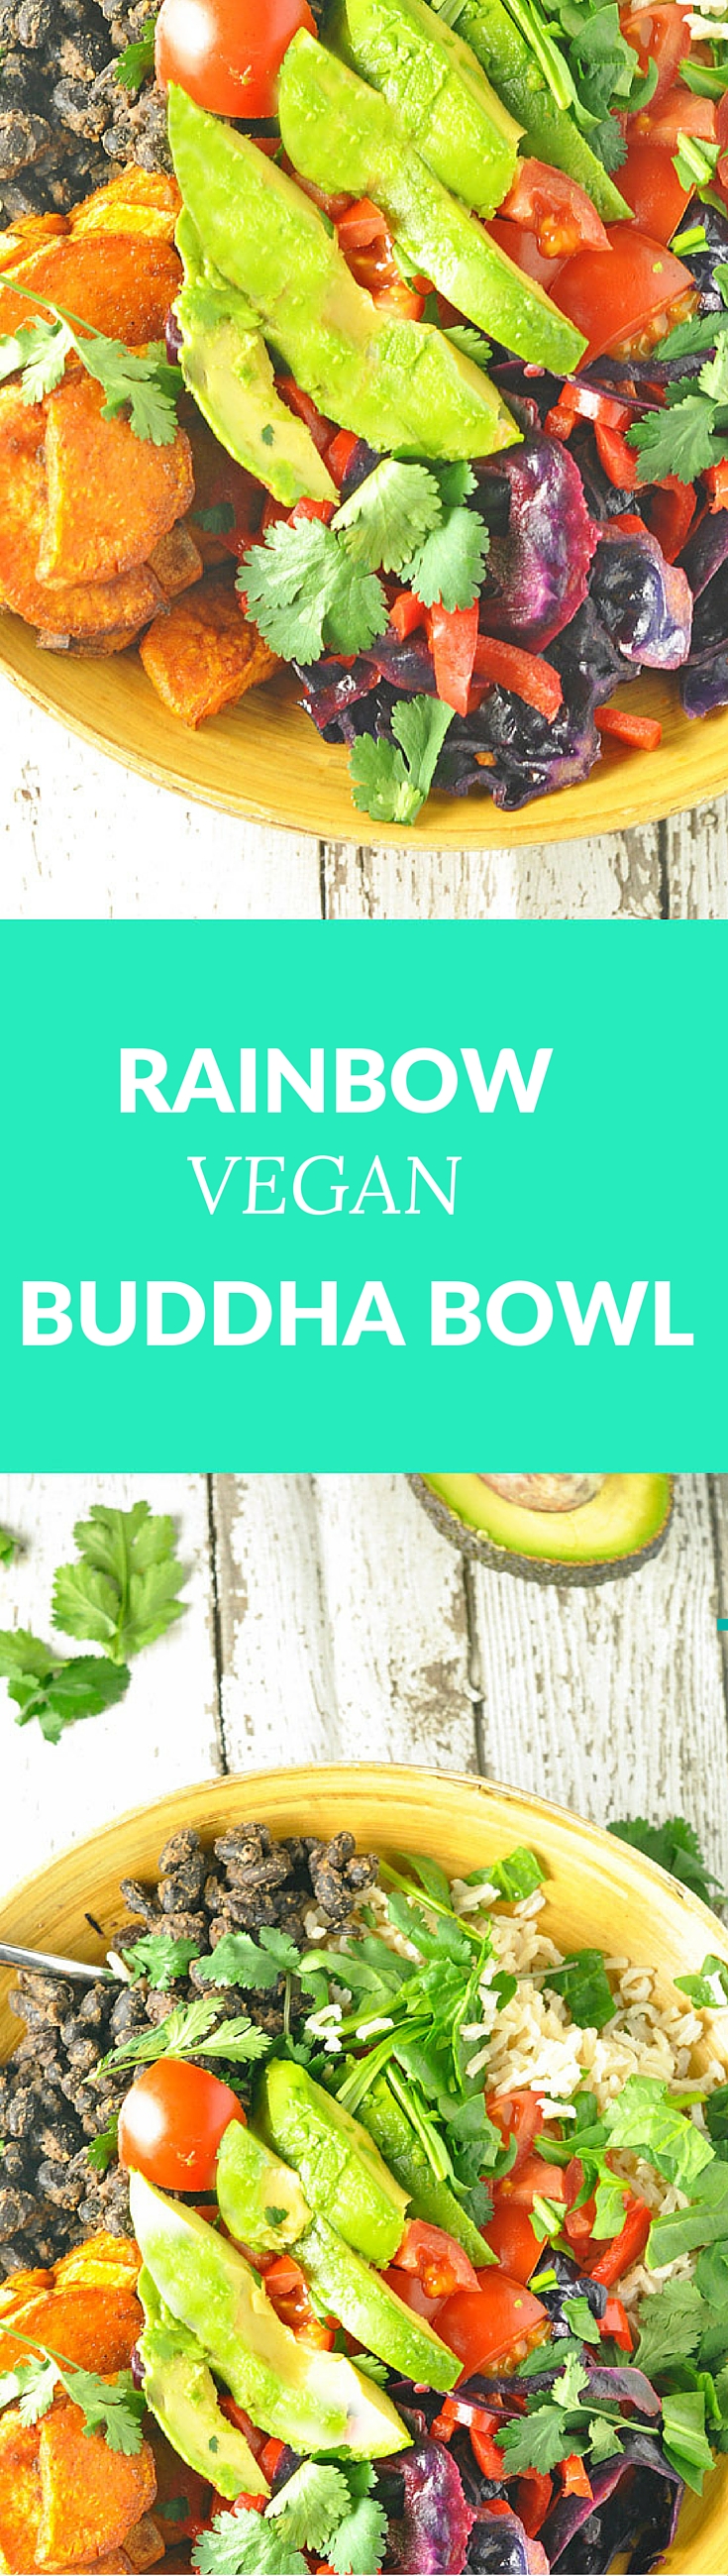 rainbow-bliss-buddha-bowl-vegan-longpin